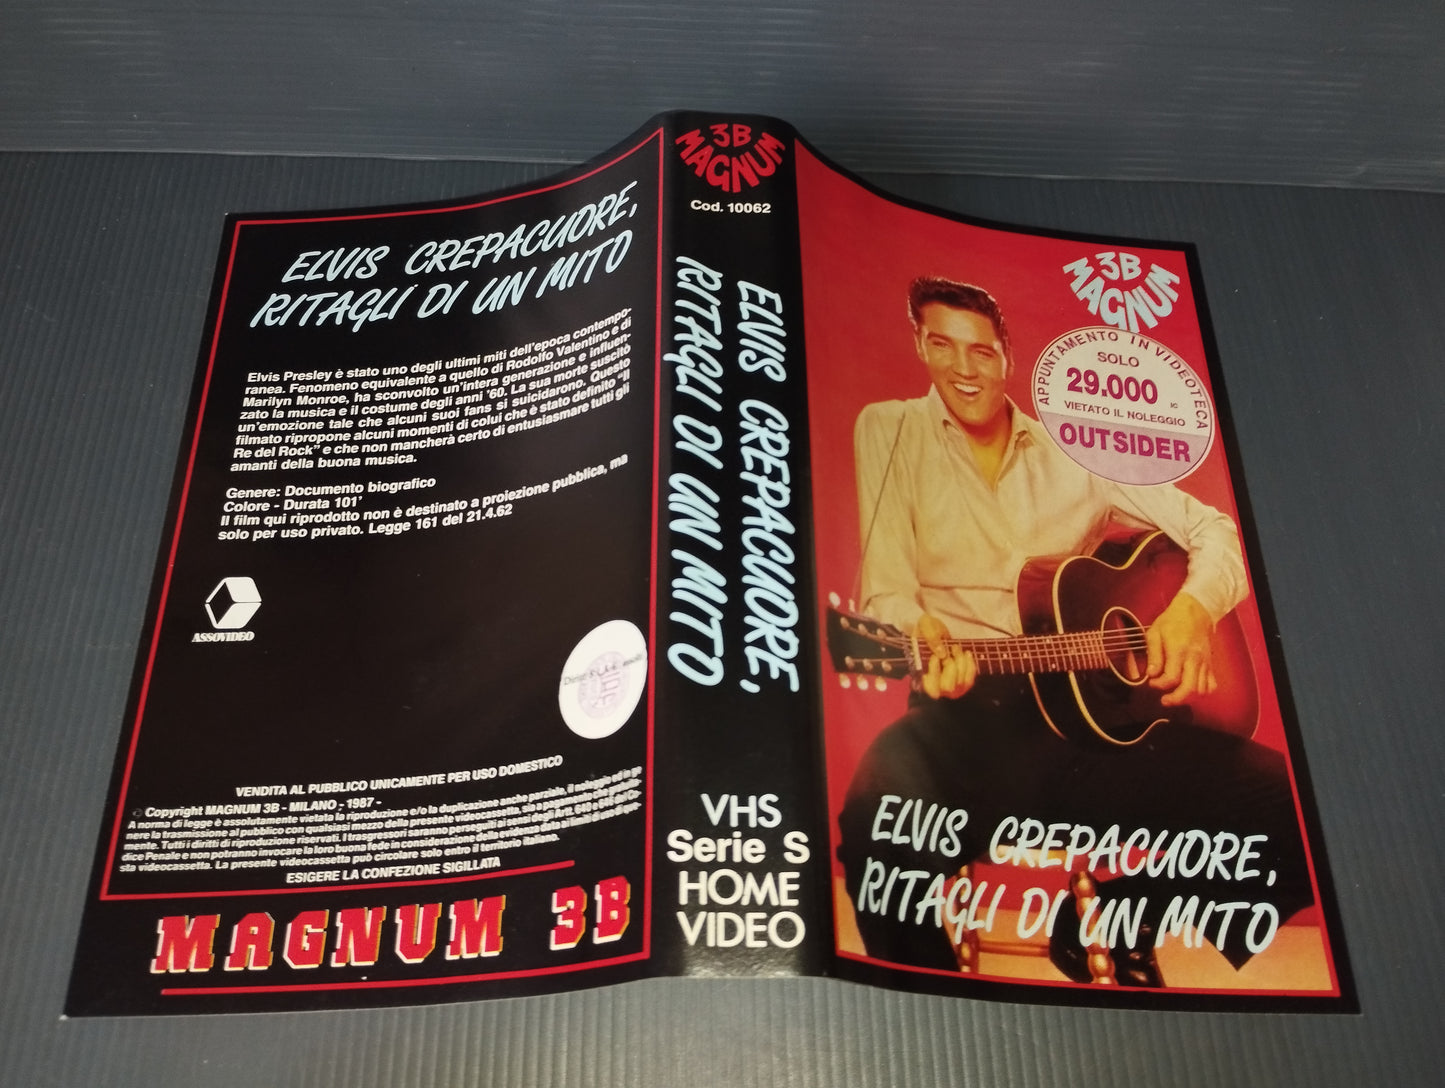 VHS "Elvis Crepacuore.Ritagli Di Un Mito"